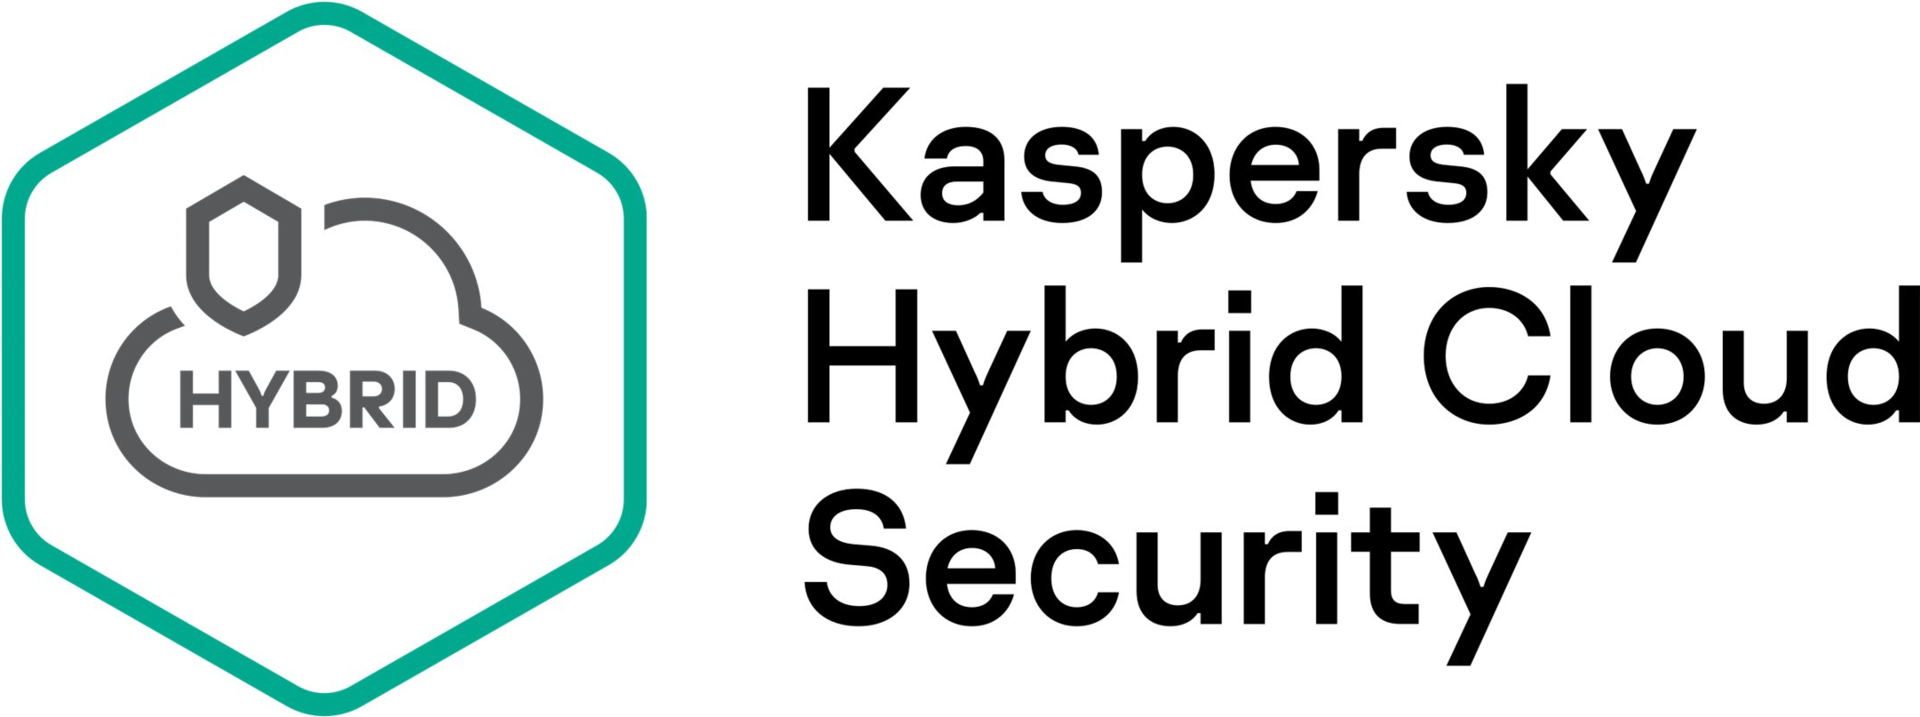 Kaspersky Hybrid Cloud Security Desktop (KL4155XATT8)